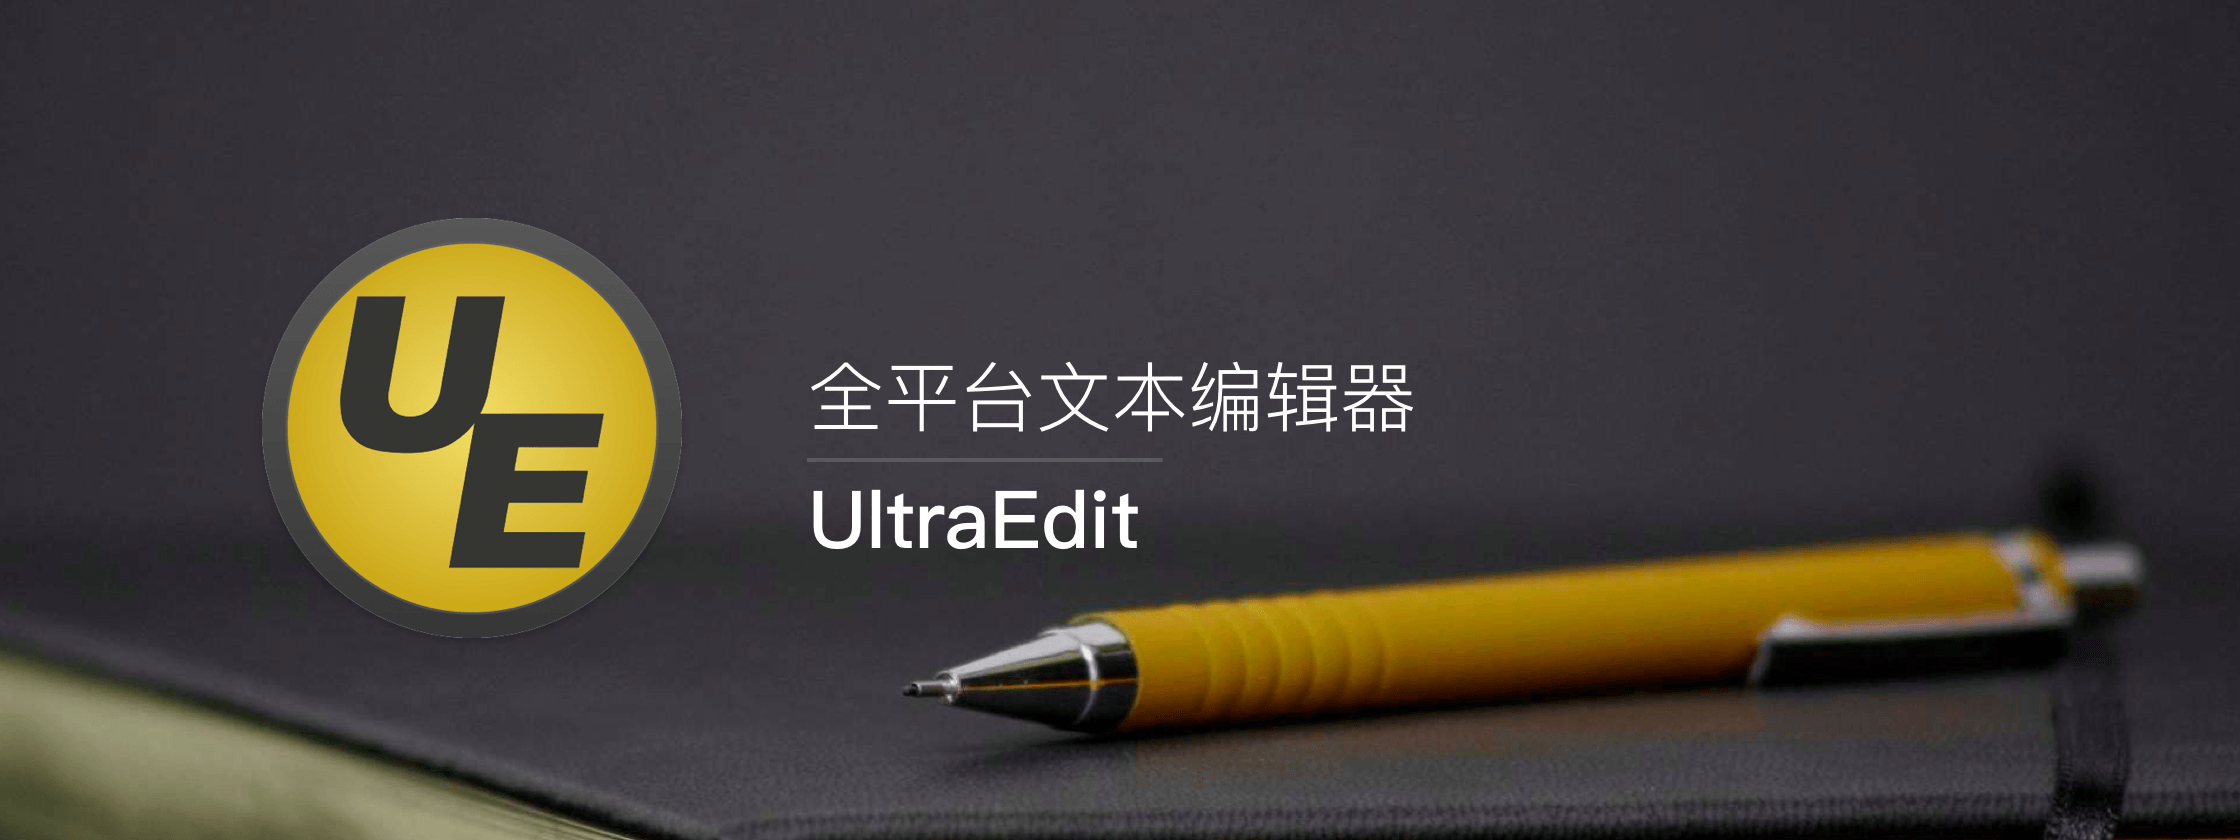 UltraEdit x64中文免费版v26.00.0.24（附IDM通用破解补丁） 标签2 标签1 WIN破解软件  第1张